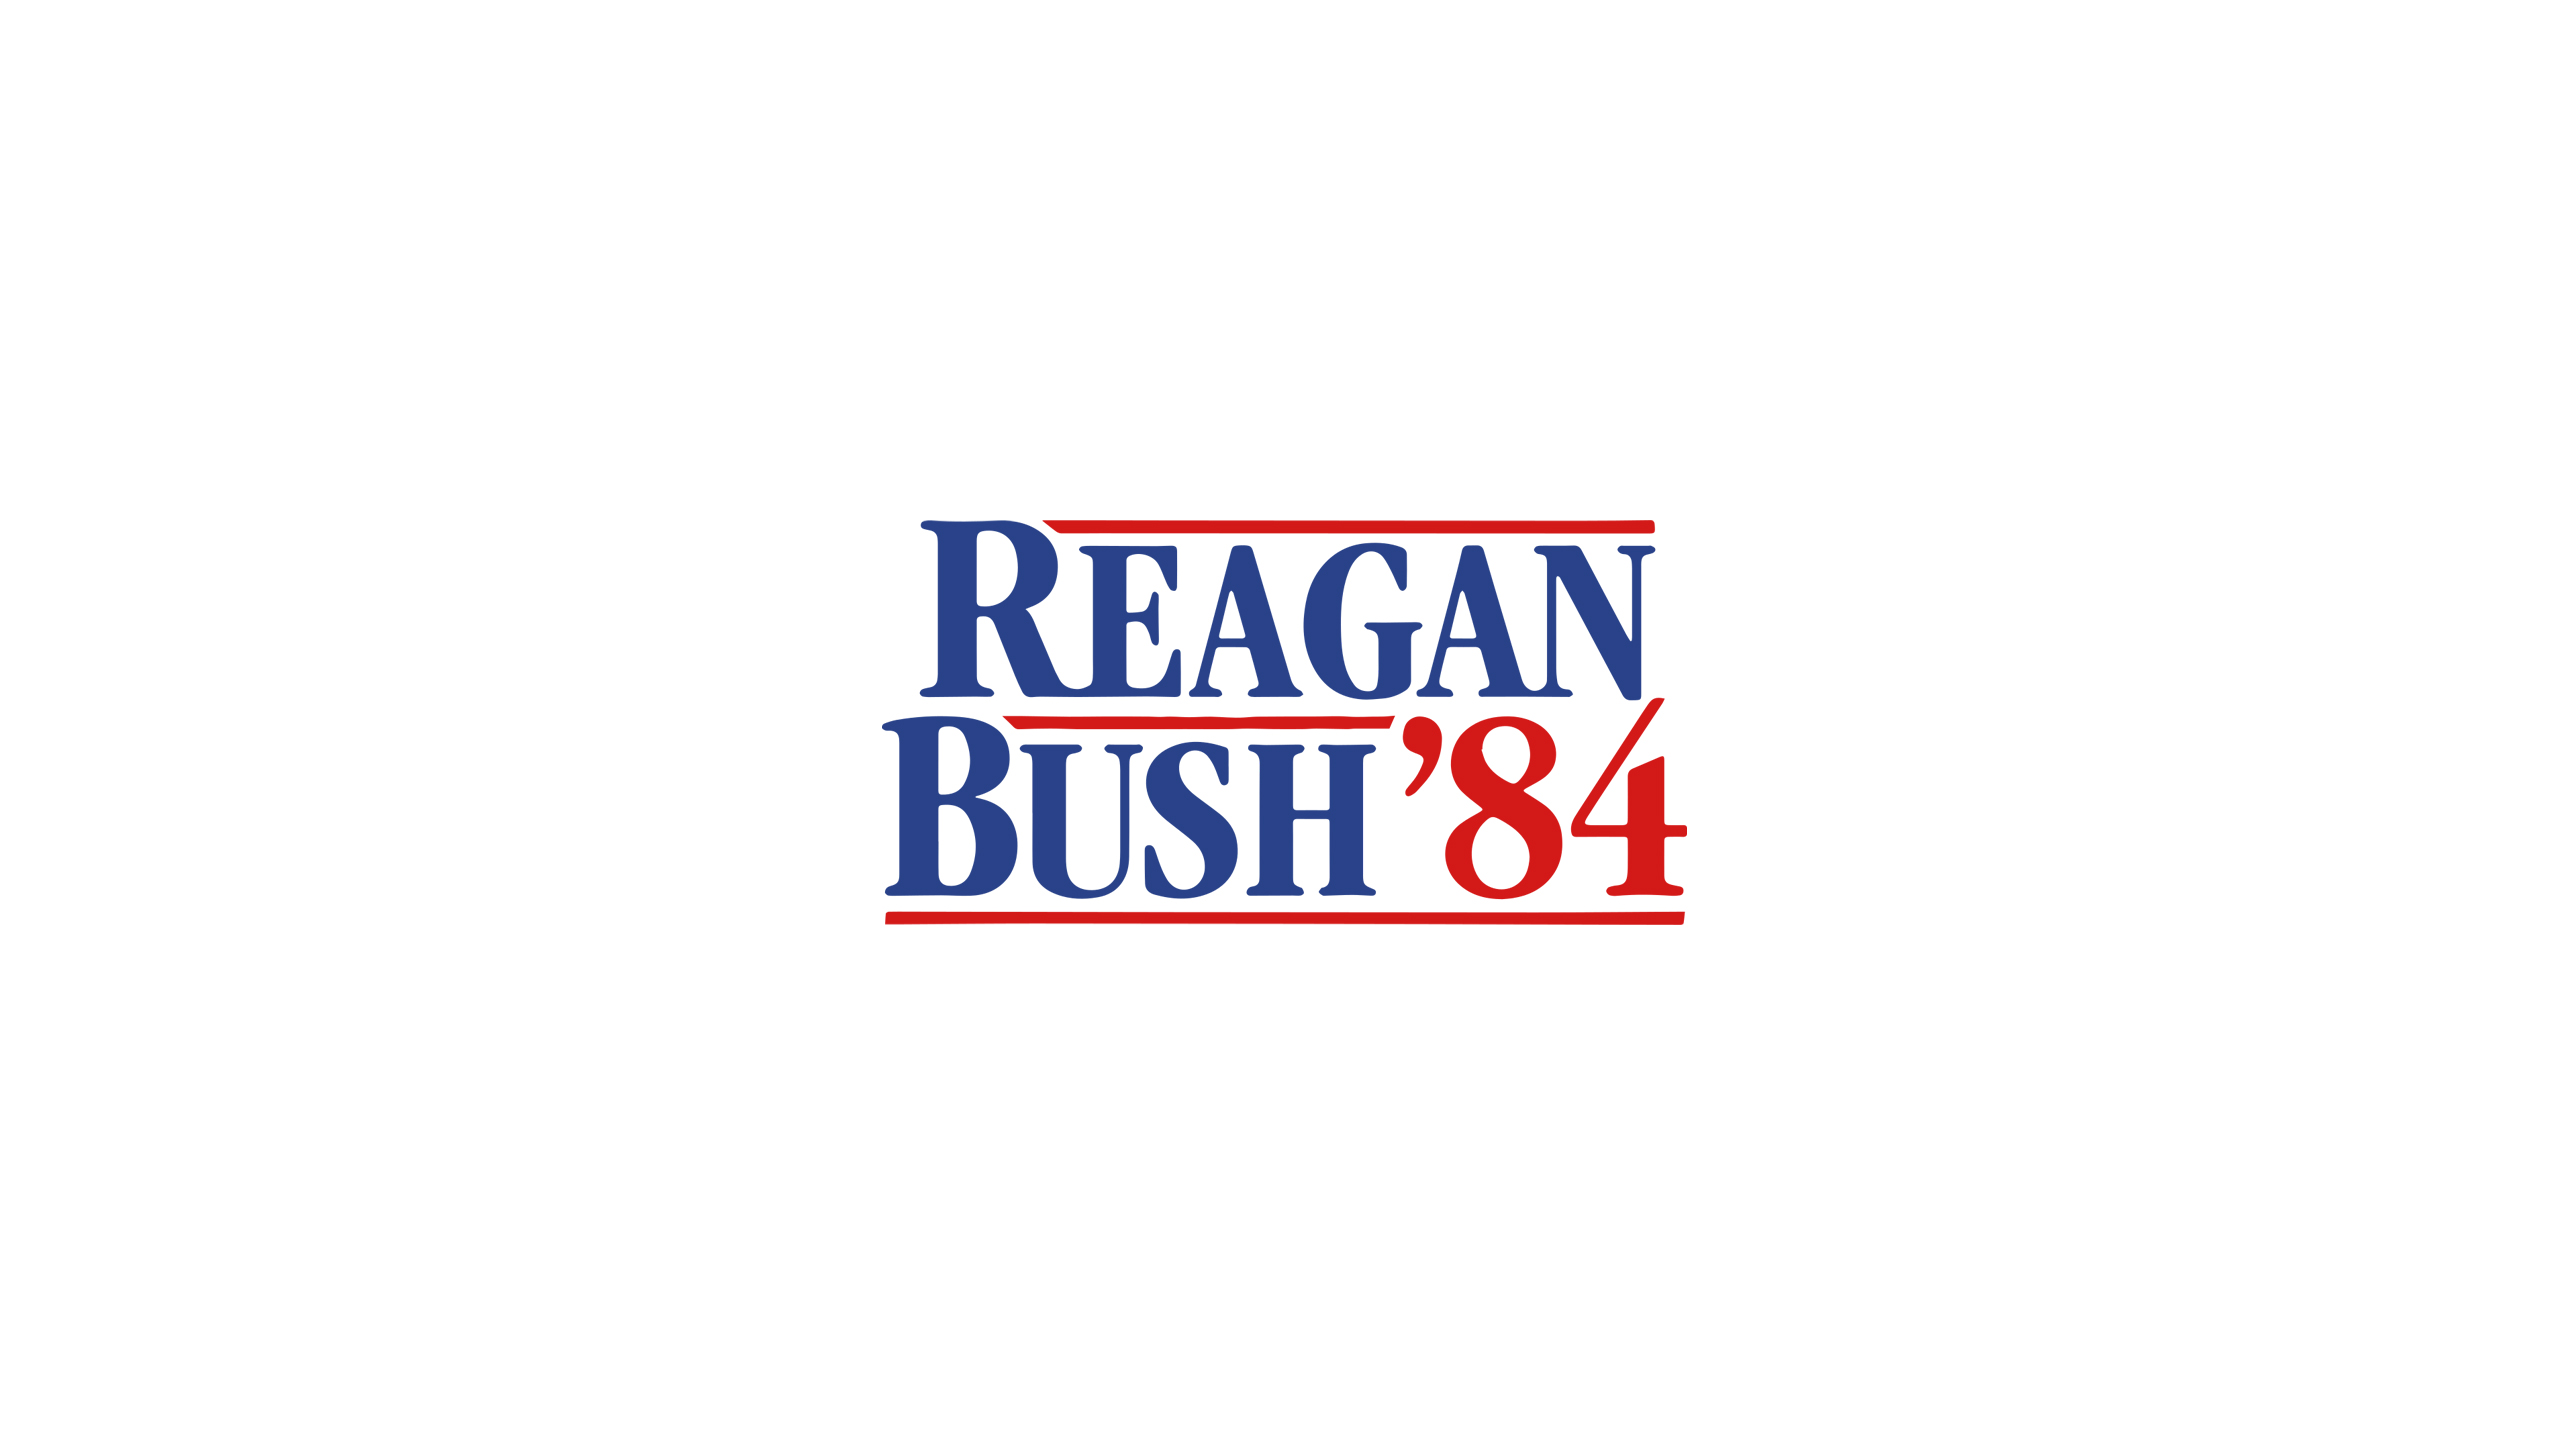 General 2569x1445 Ronald Reagan George H. W. Bush 1984 politics political figure logo 1984 (Year)